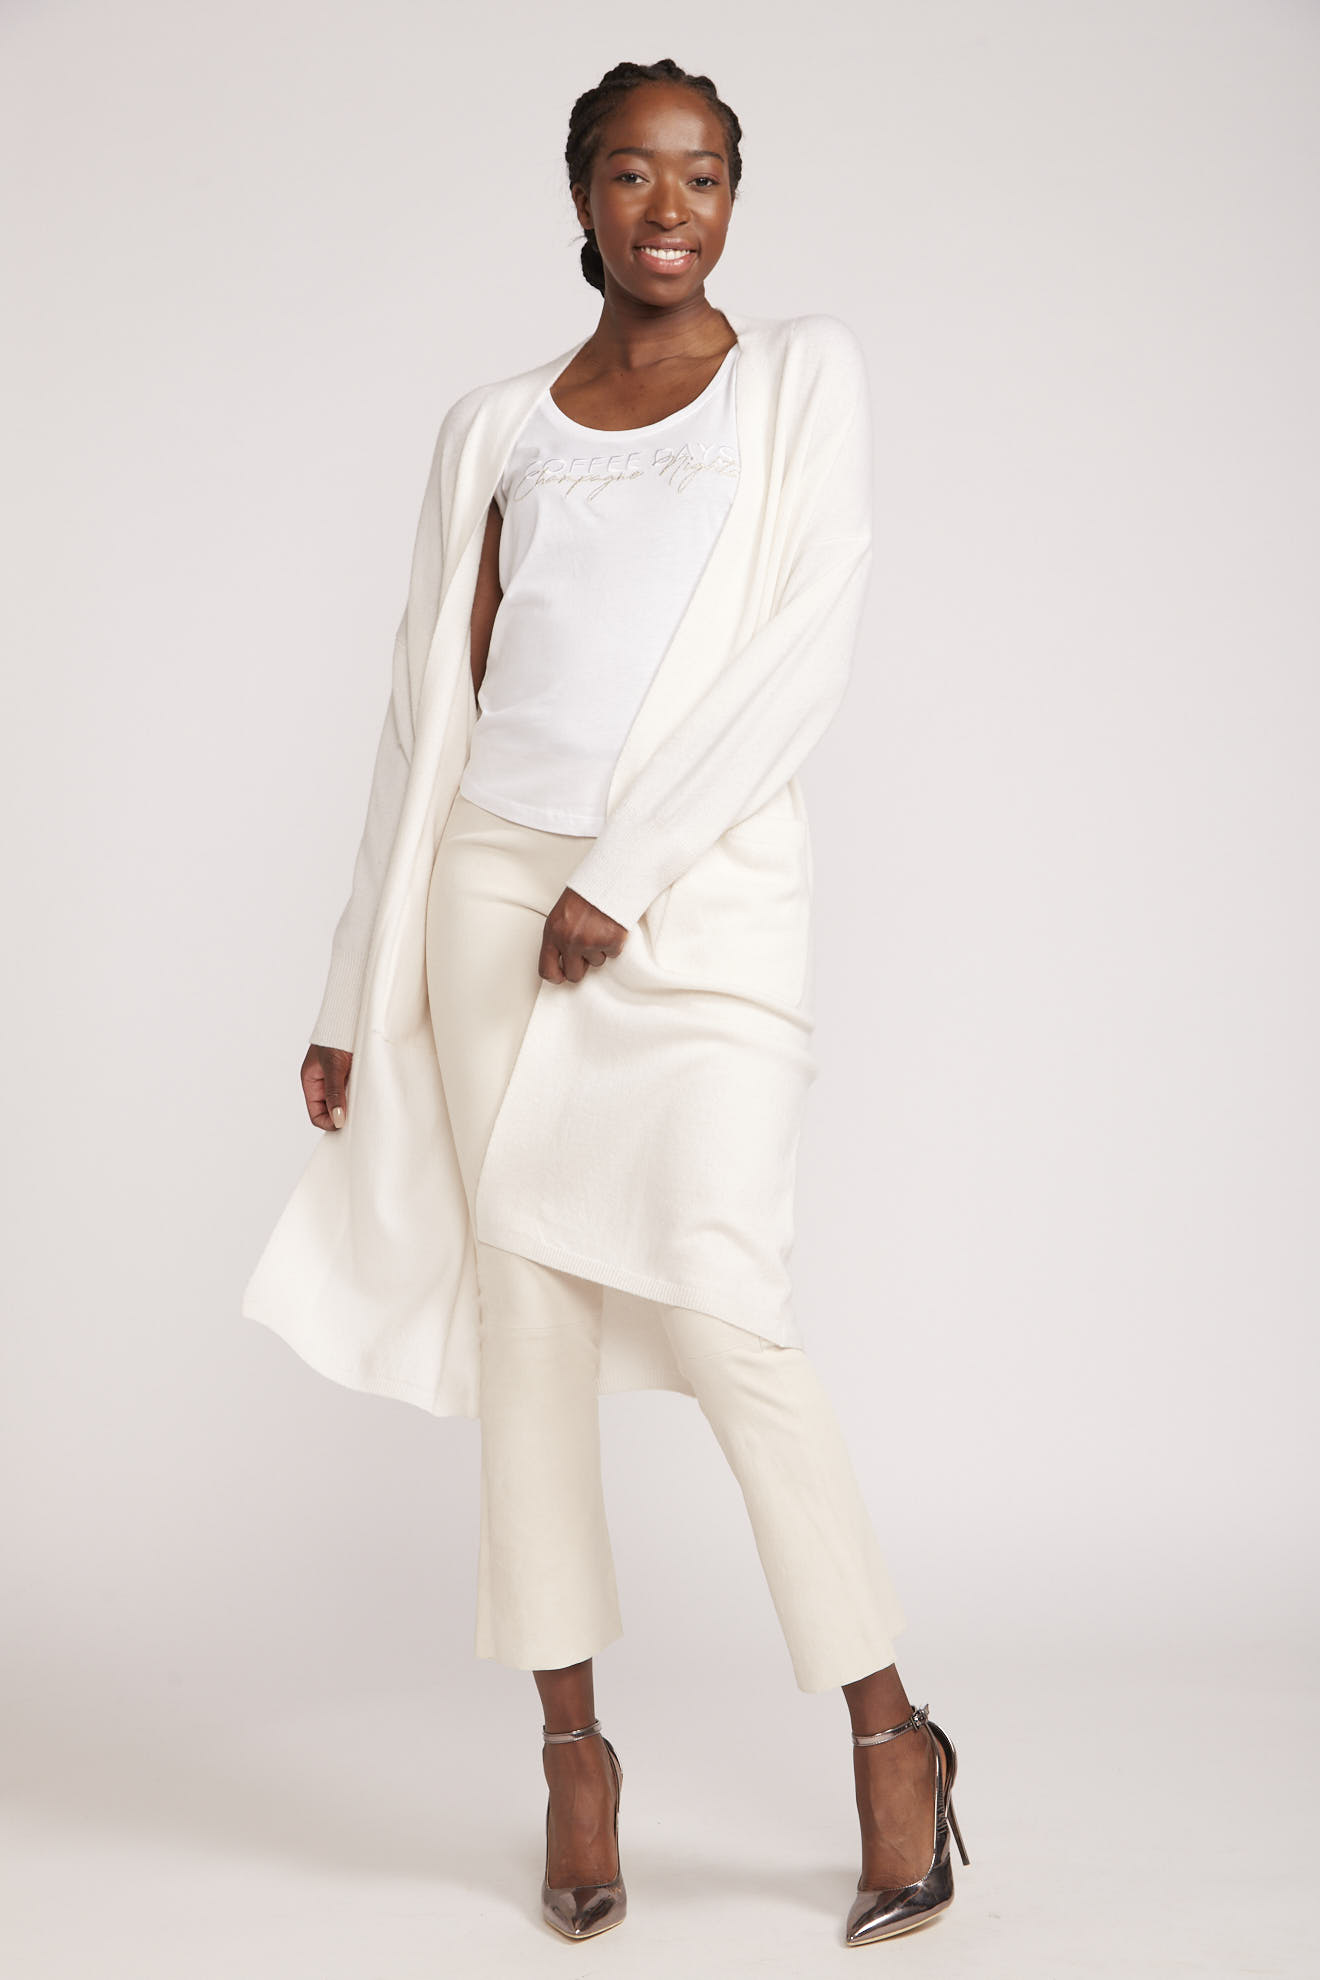 antonia zander coat white plain cashmere model front